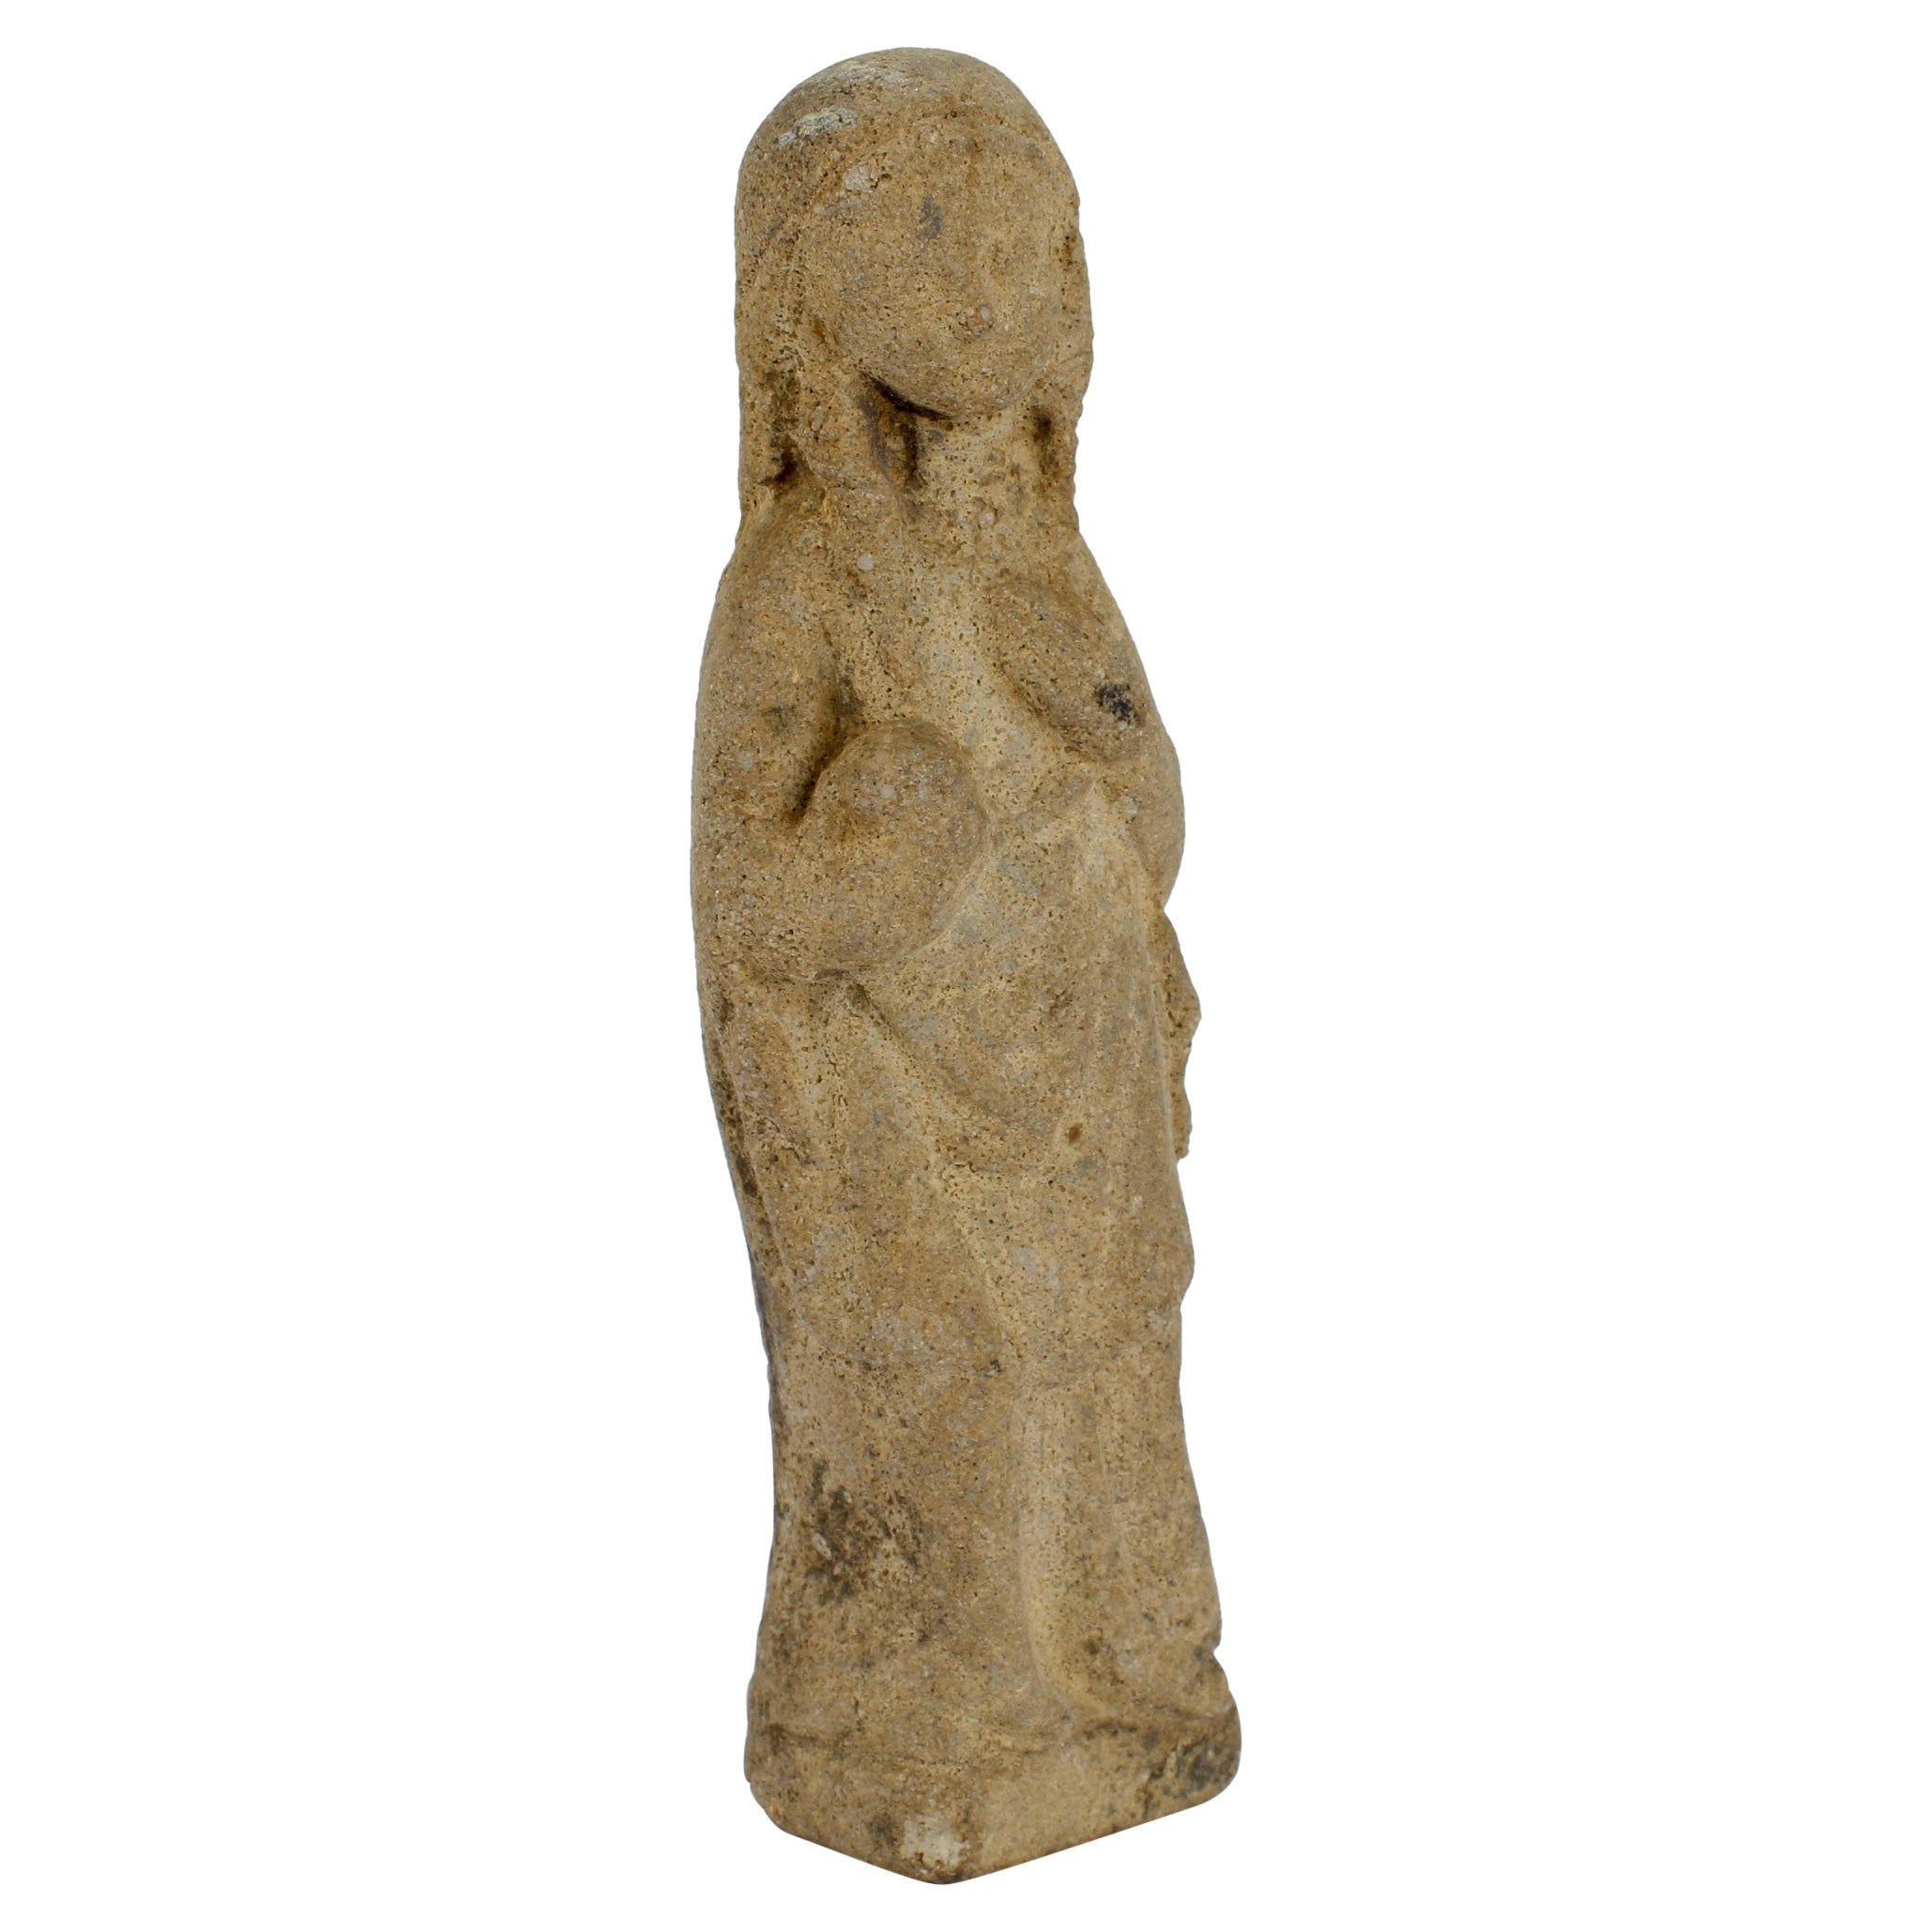 Antikes gotisches geschnitztes Kalksteinmodell einer Madonna oder Venus